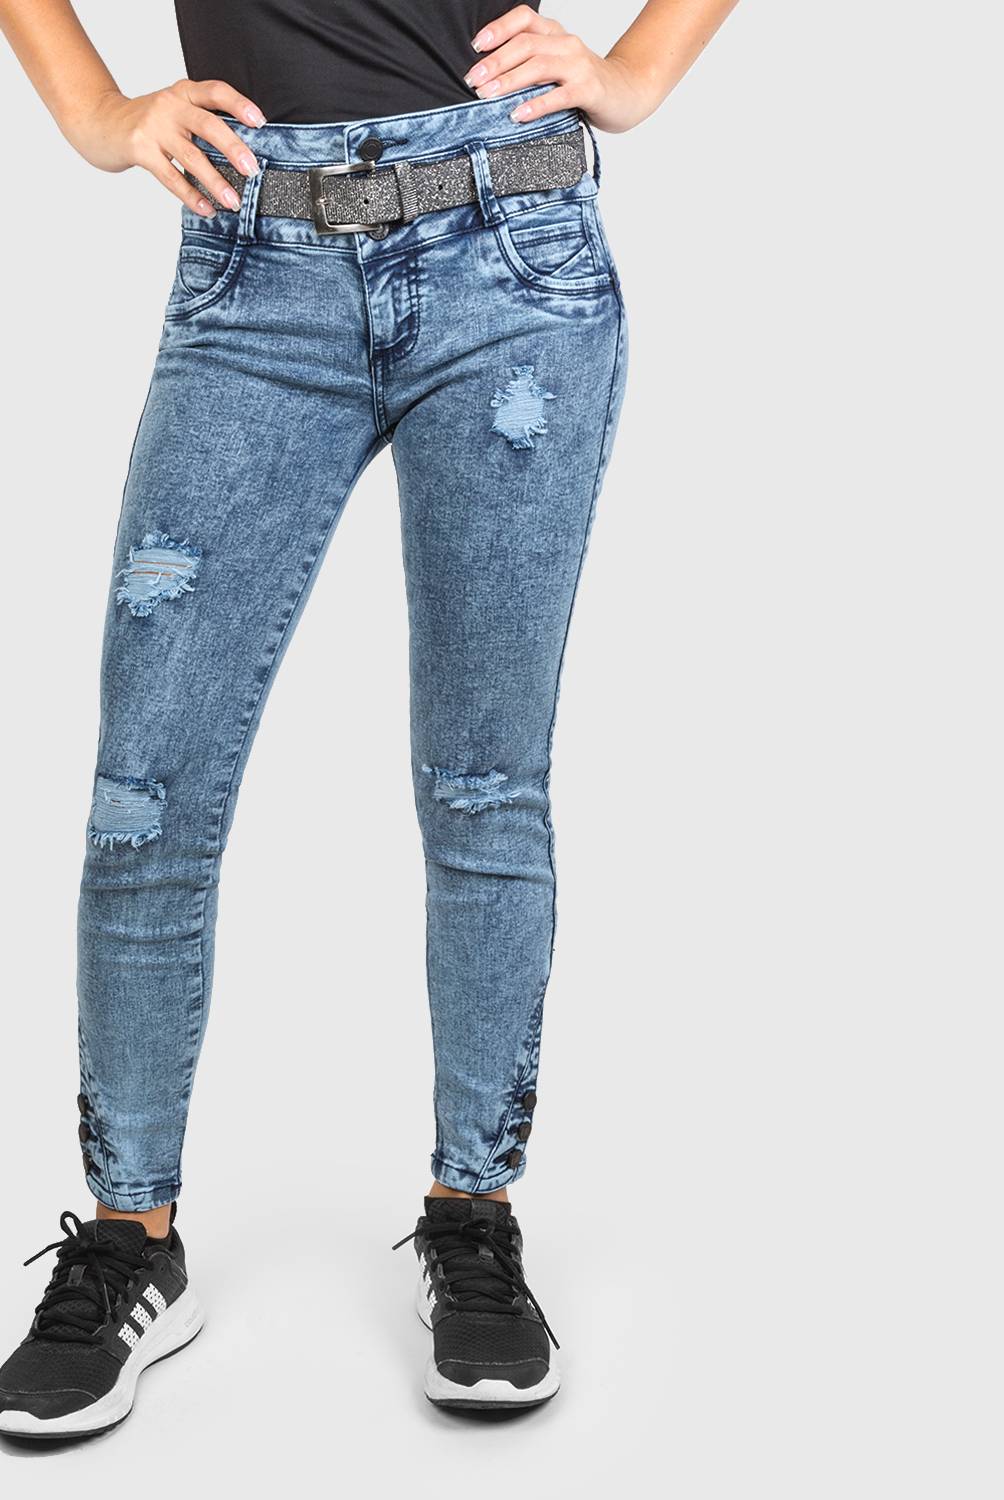 MOSSIMO - Jeans con Correa